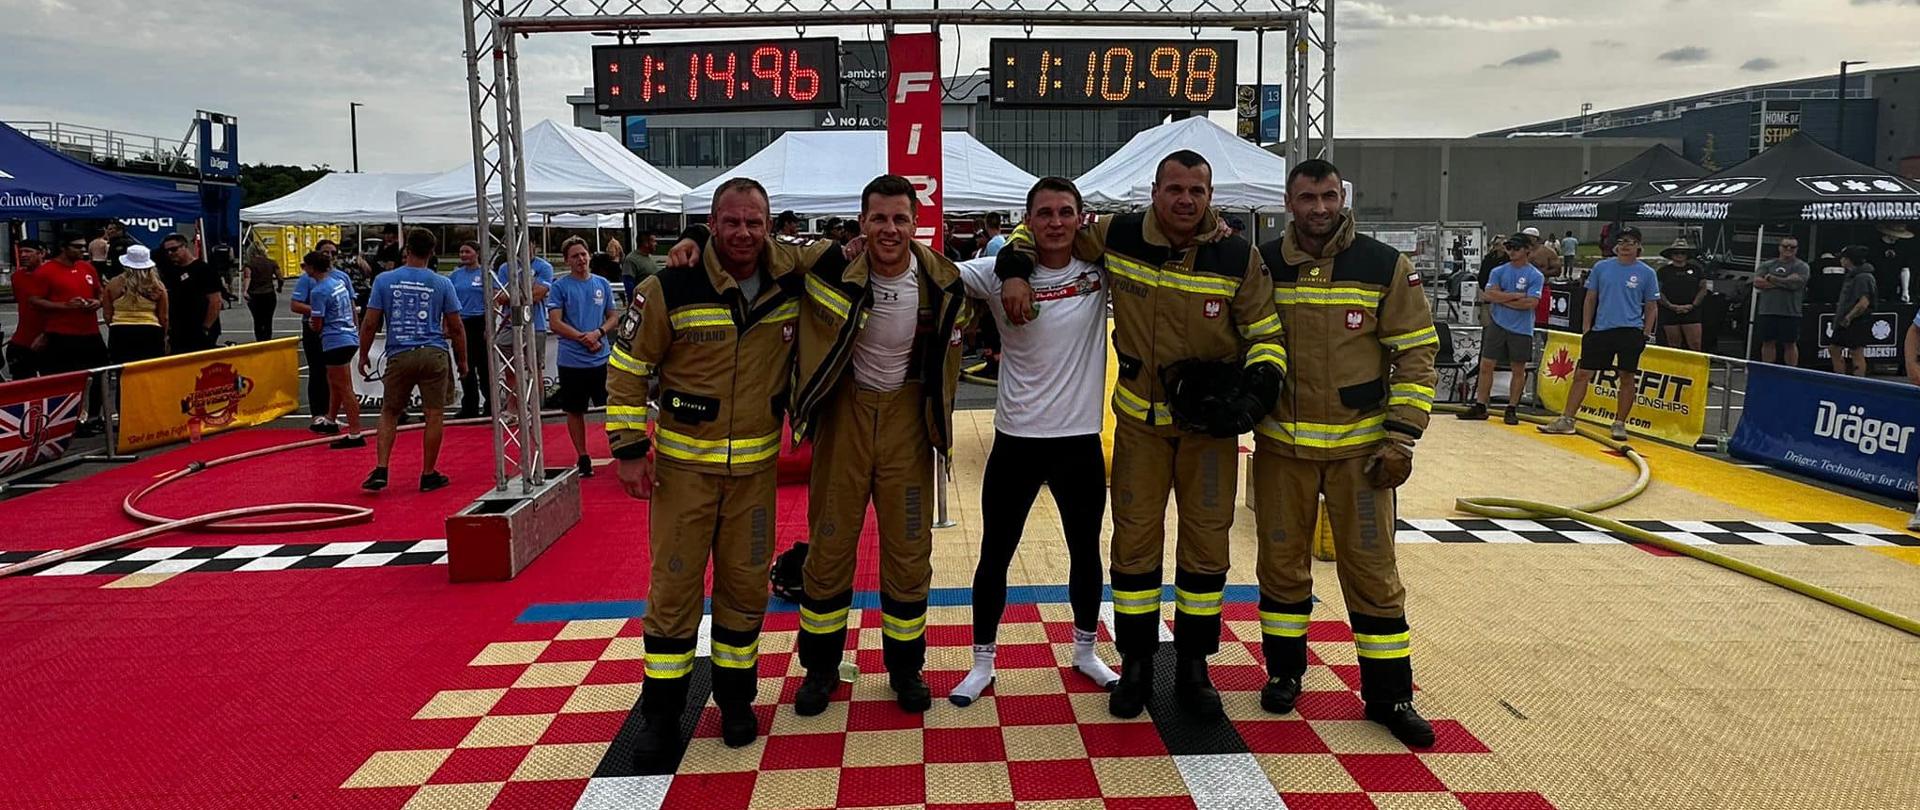 5 strażaków startujących w zawodach wraz z uzyskanymi czasami